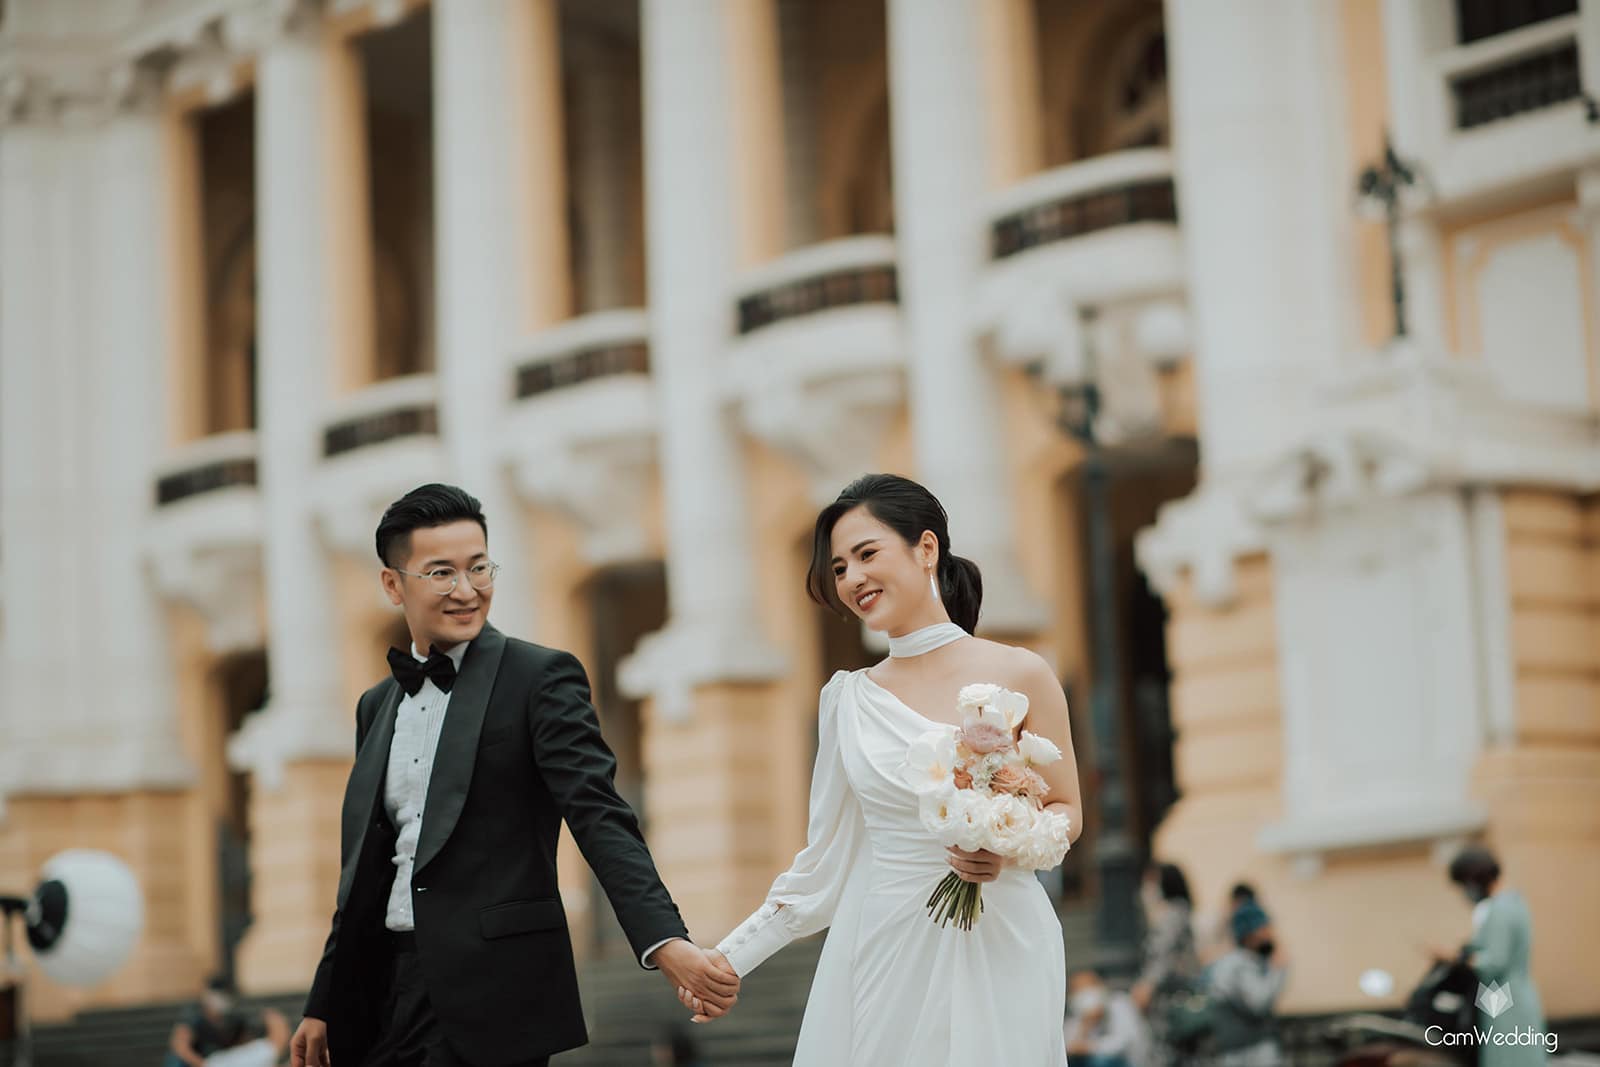 Việt Hoa 'Em gái Phương Oanh' tung bộ ảnh đẹp lung linh với bạn trai khiến netizen cứ ngỡ ảnh cưới - Ảnh 6